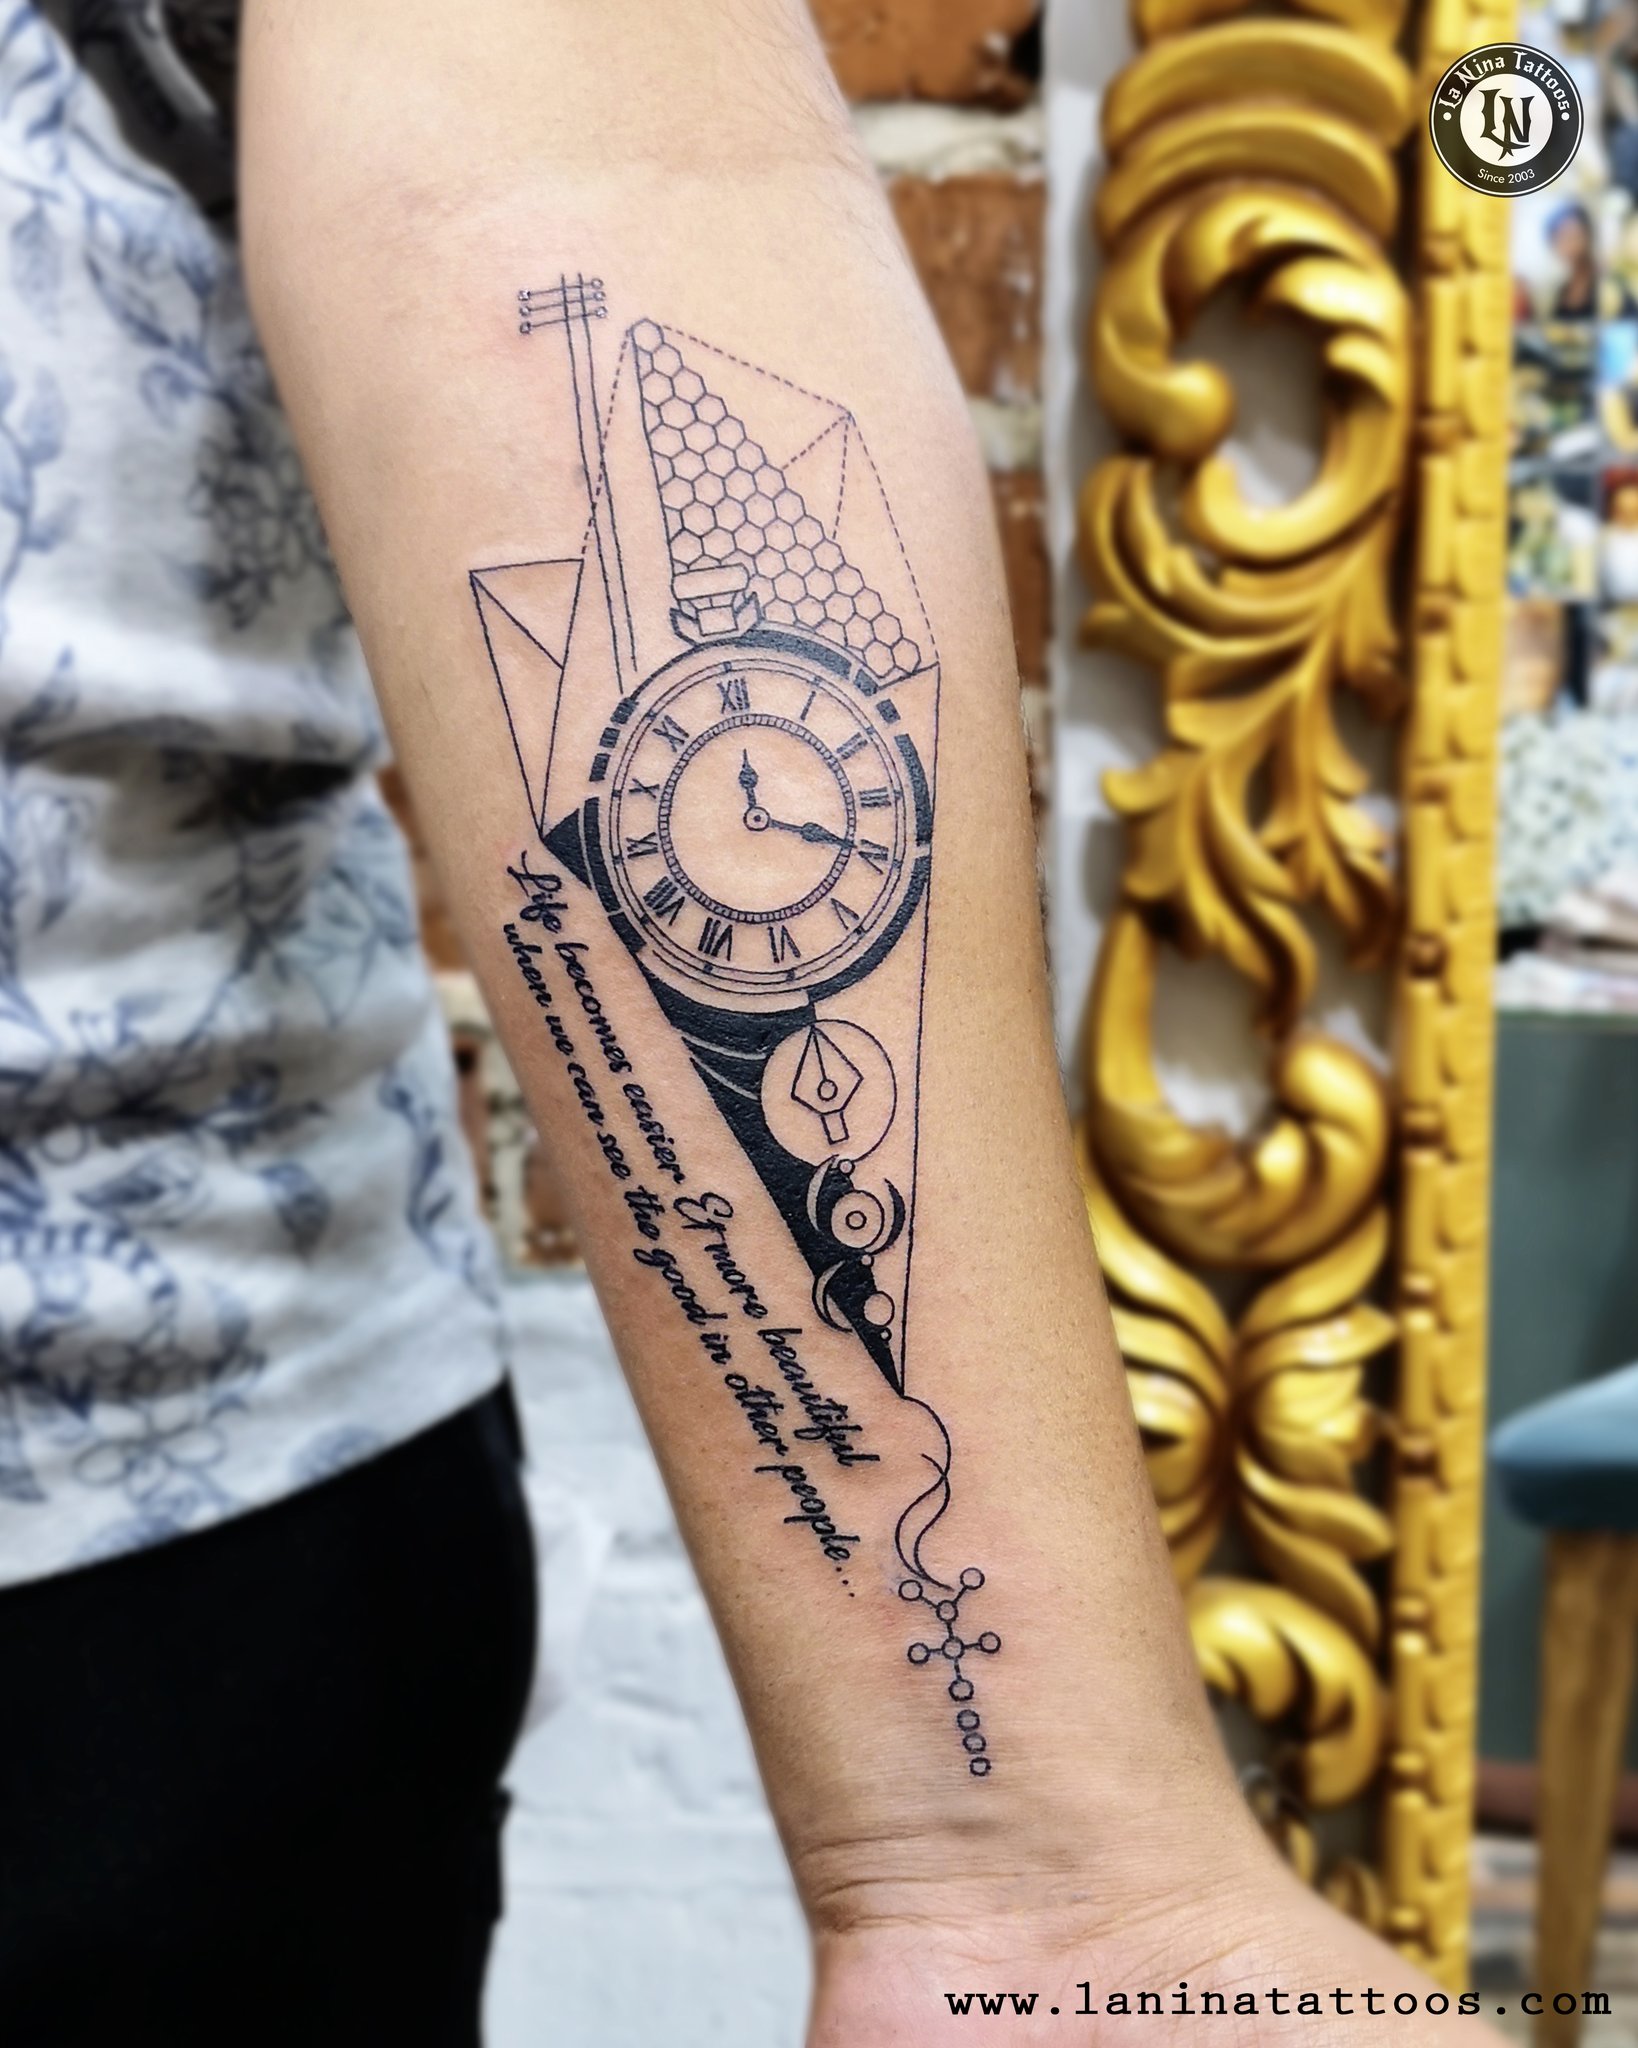 La Nina Tattoo Studio on Twitter Forearm Tattoo at La nina tattoo Studio  ahmedabad gujarat india abstract tattoo tattooart laninatattoos  httpstcoAAQl7KQ2J4  Twitter